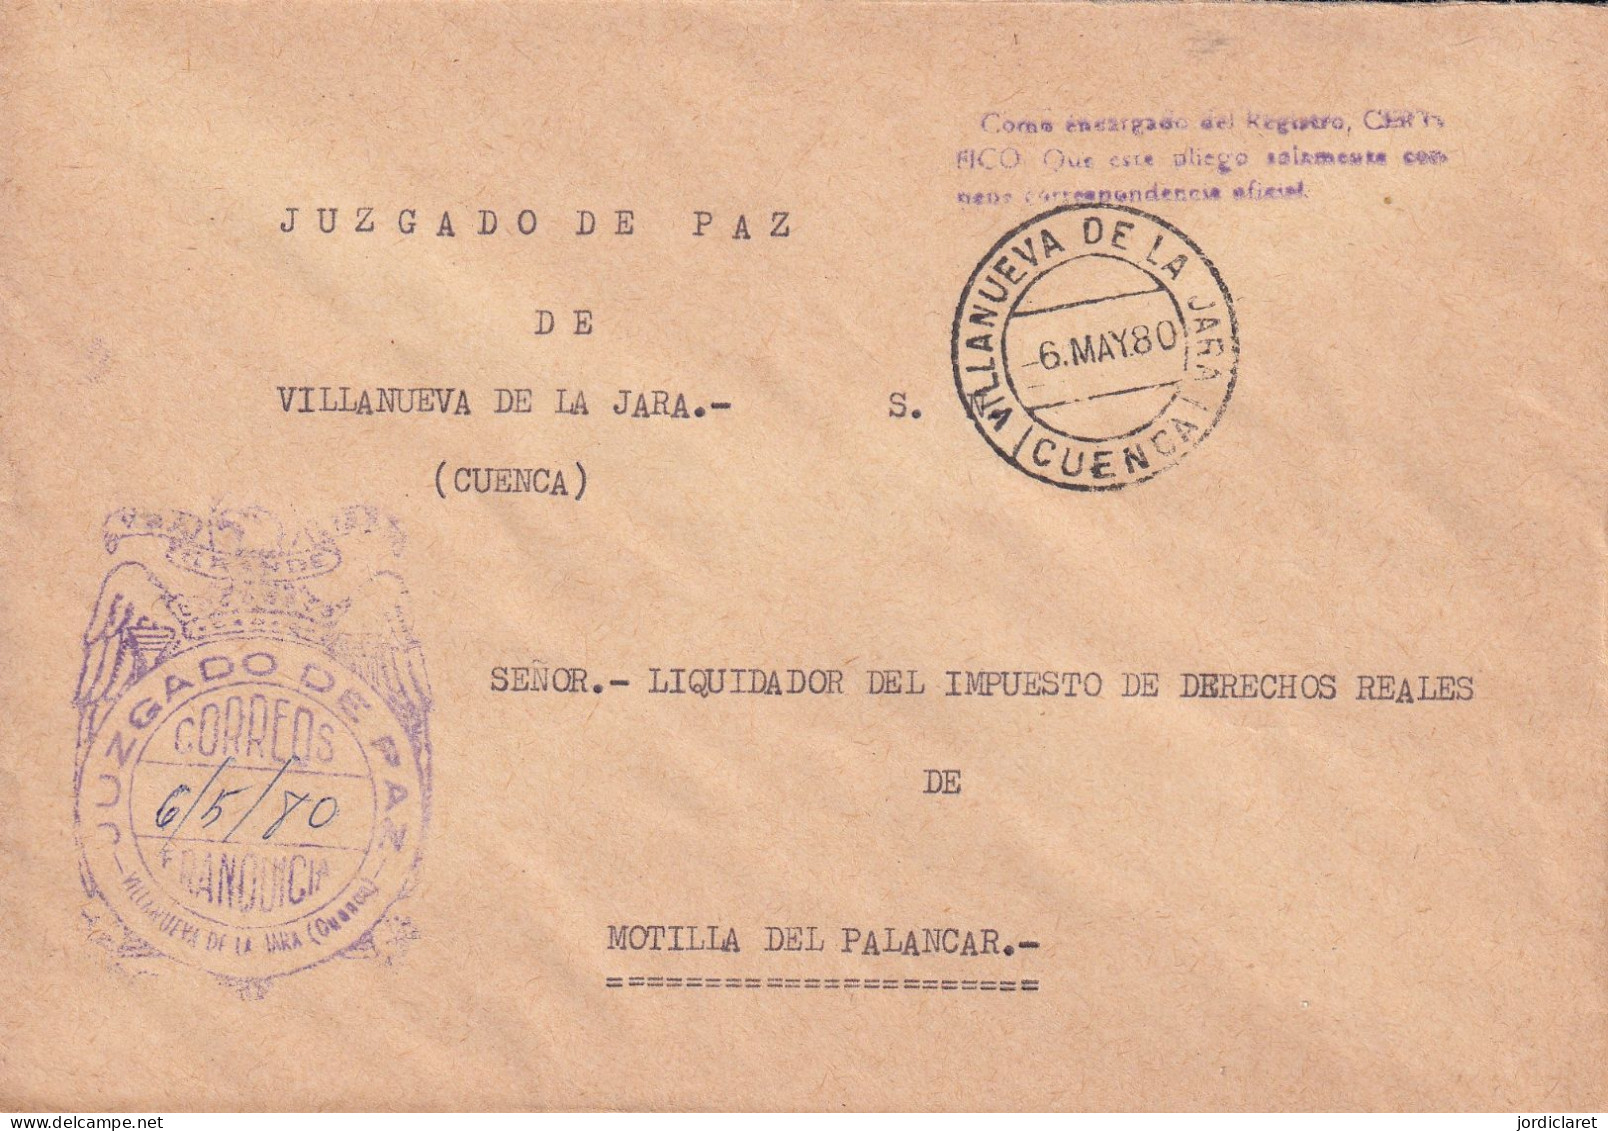 JUZGADO DE PAZ VILLANUEVA DE LA JARA CUENCA 1980 - Franchise Postale